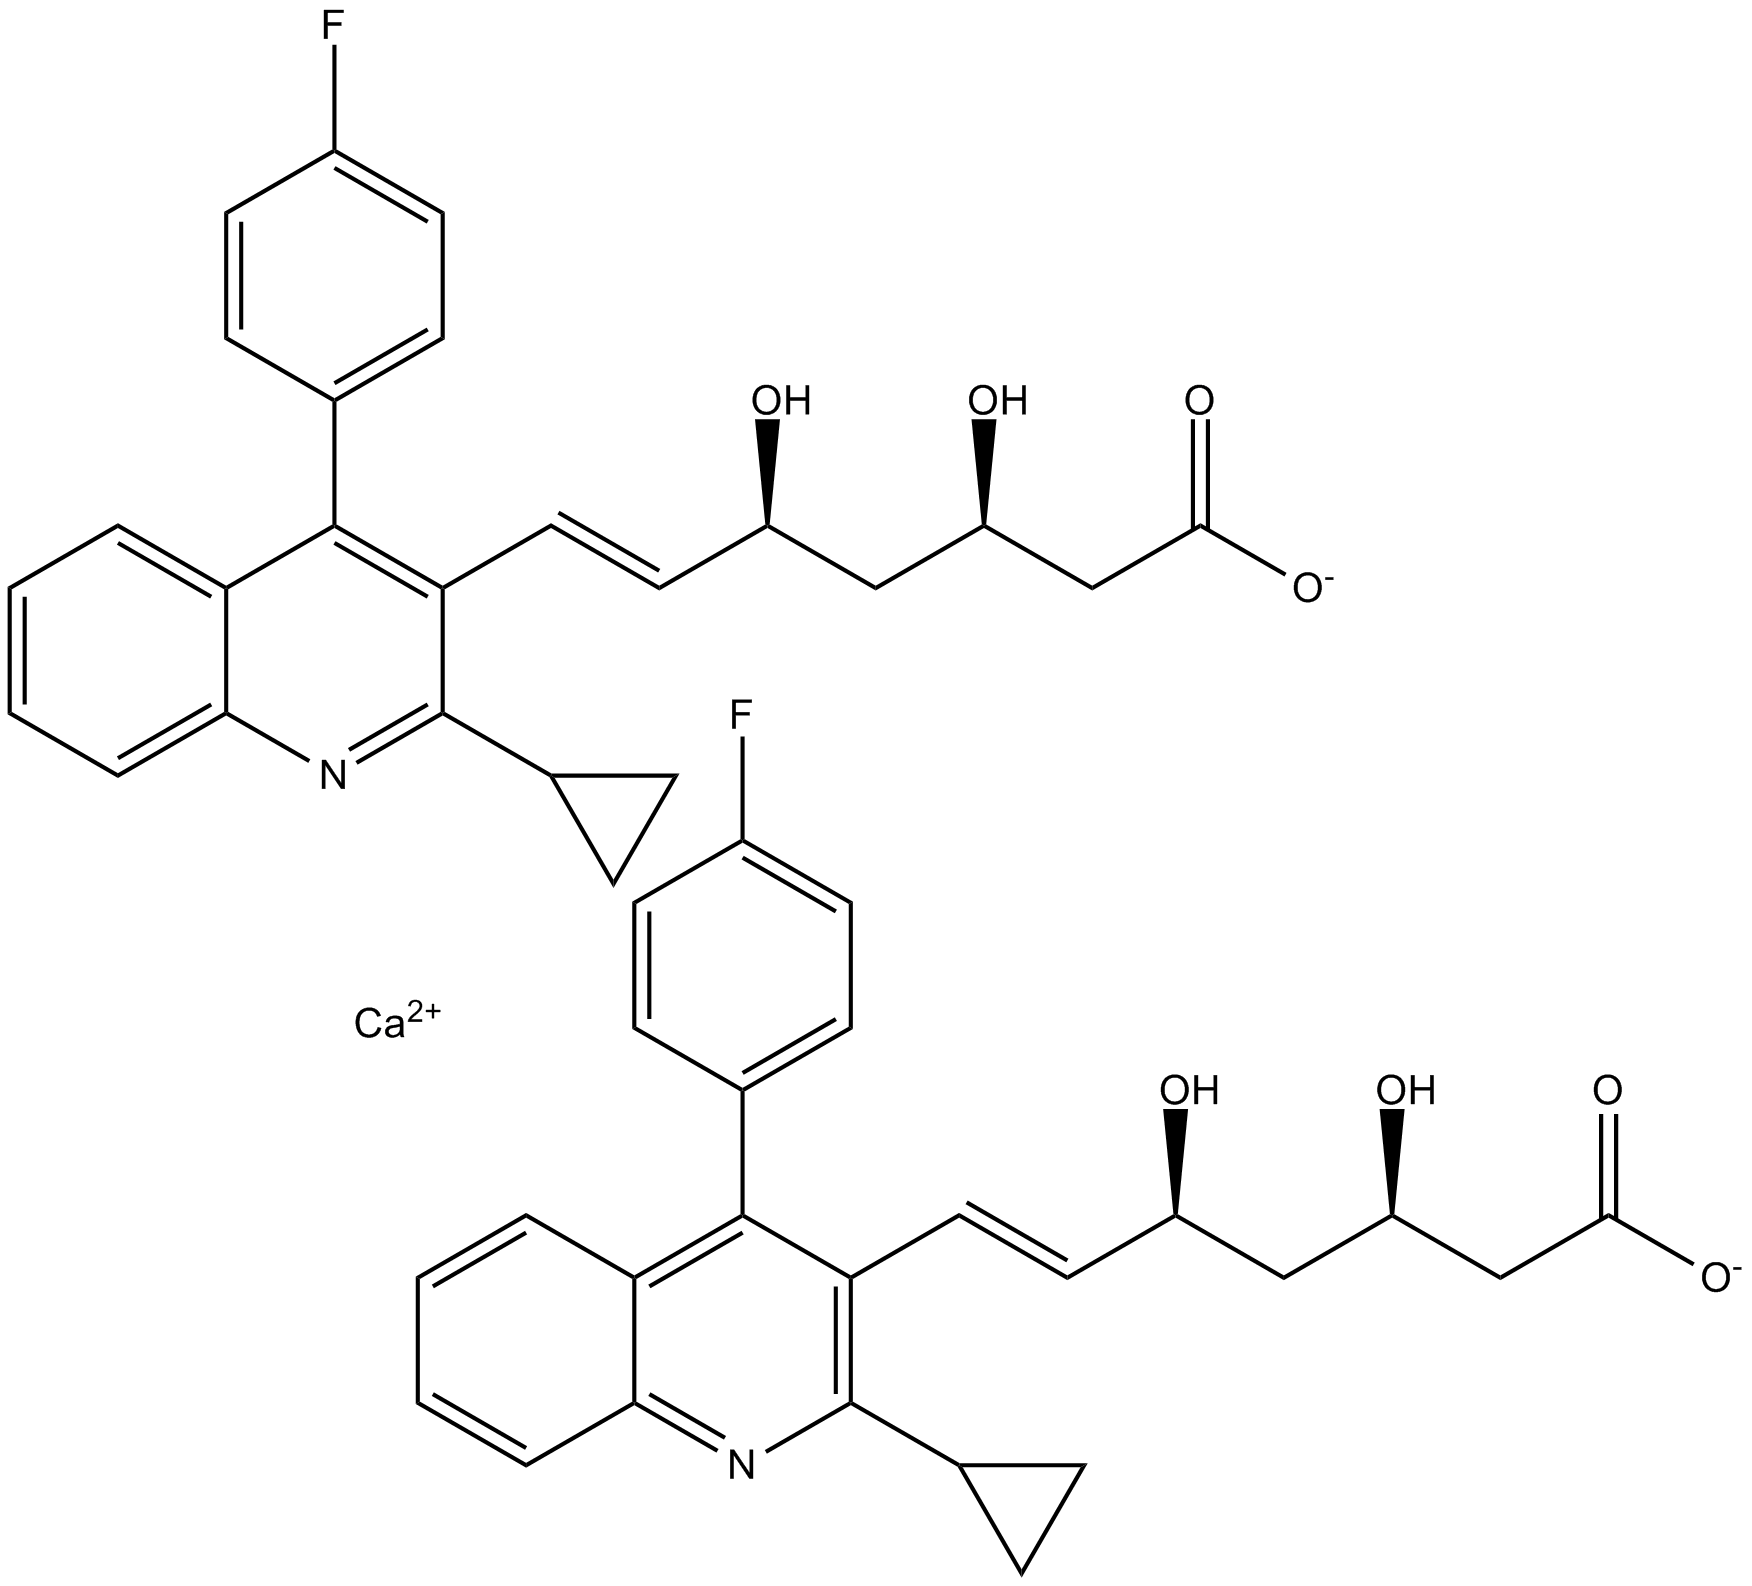 Pitavastatin Calcium